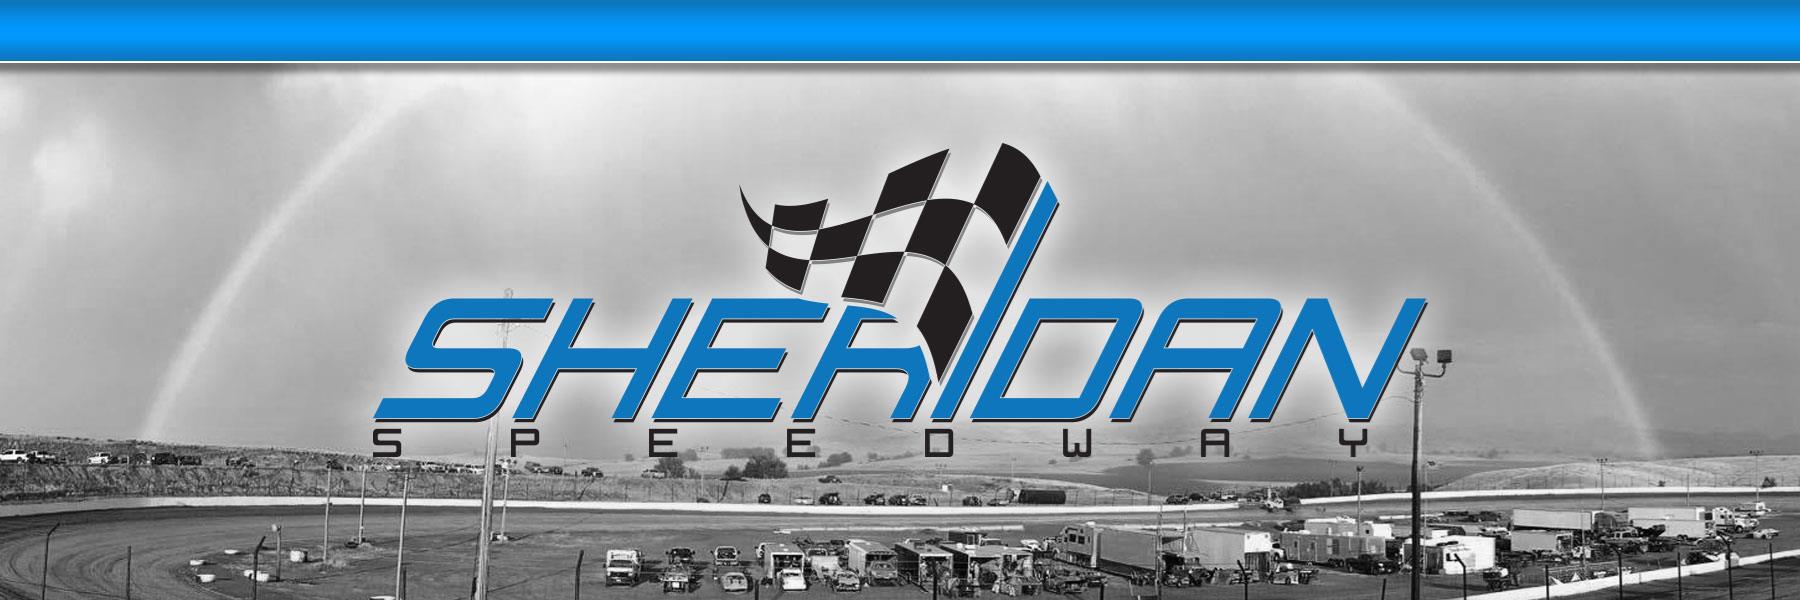 6/29/2020 - Sheridan Speedway